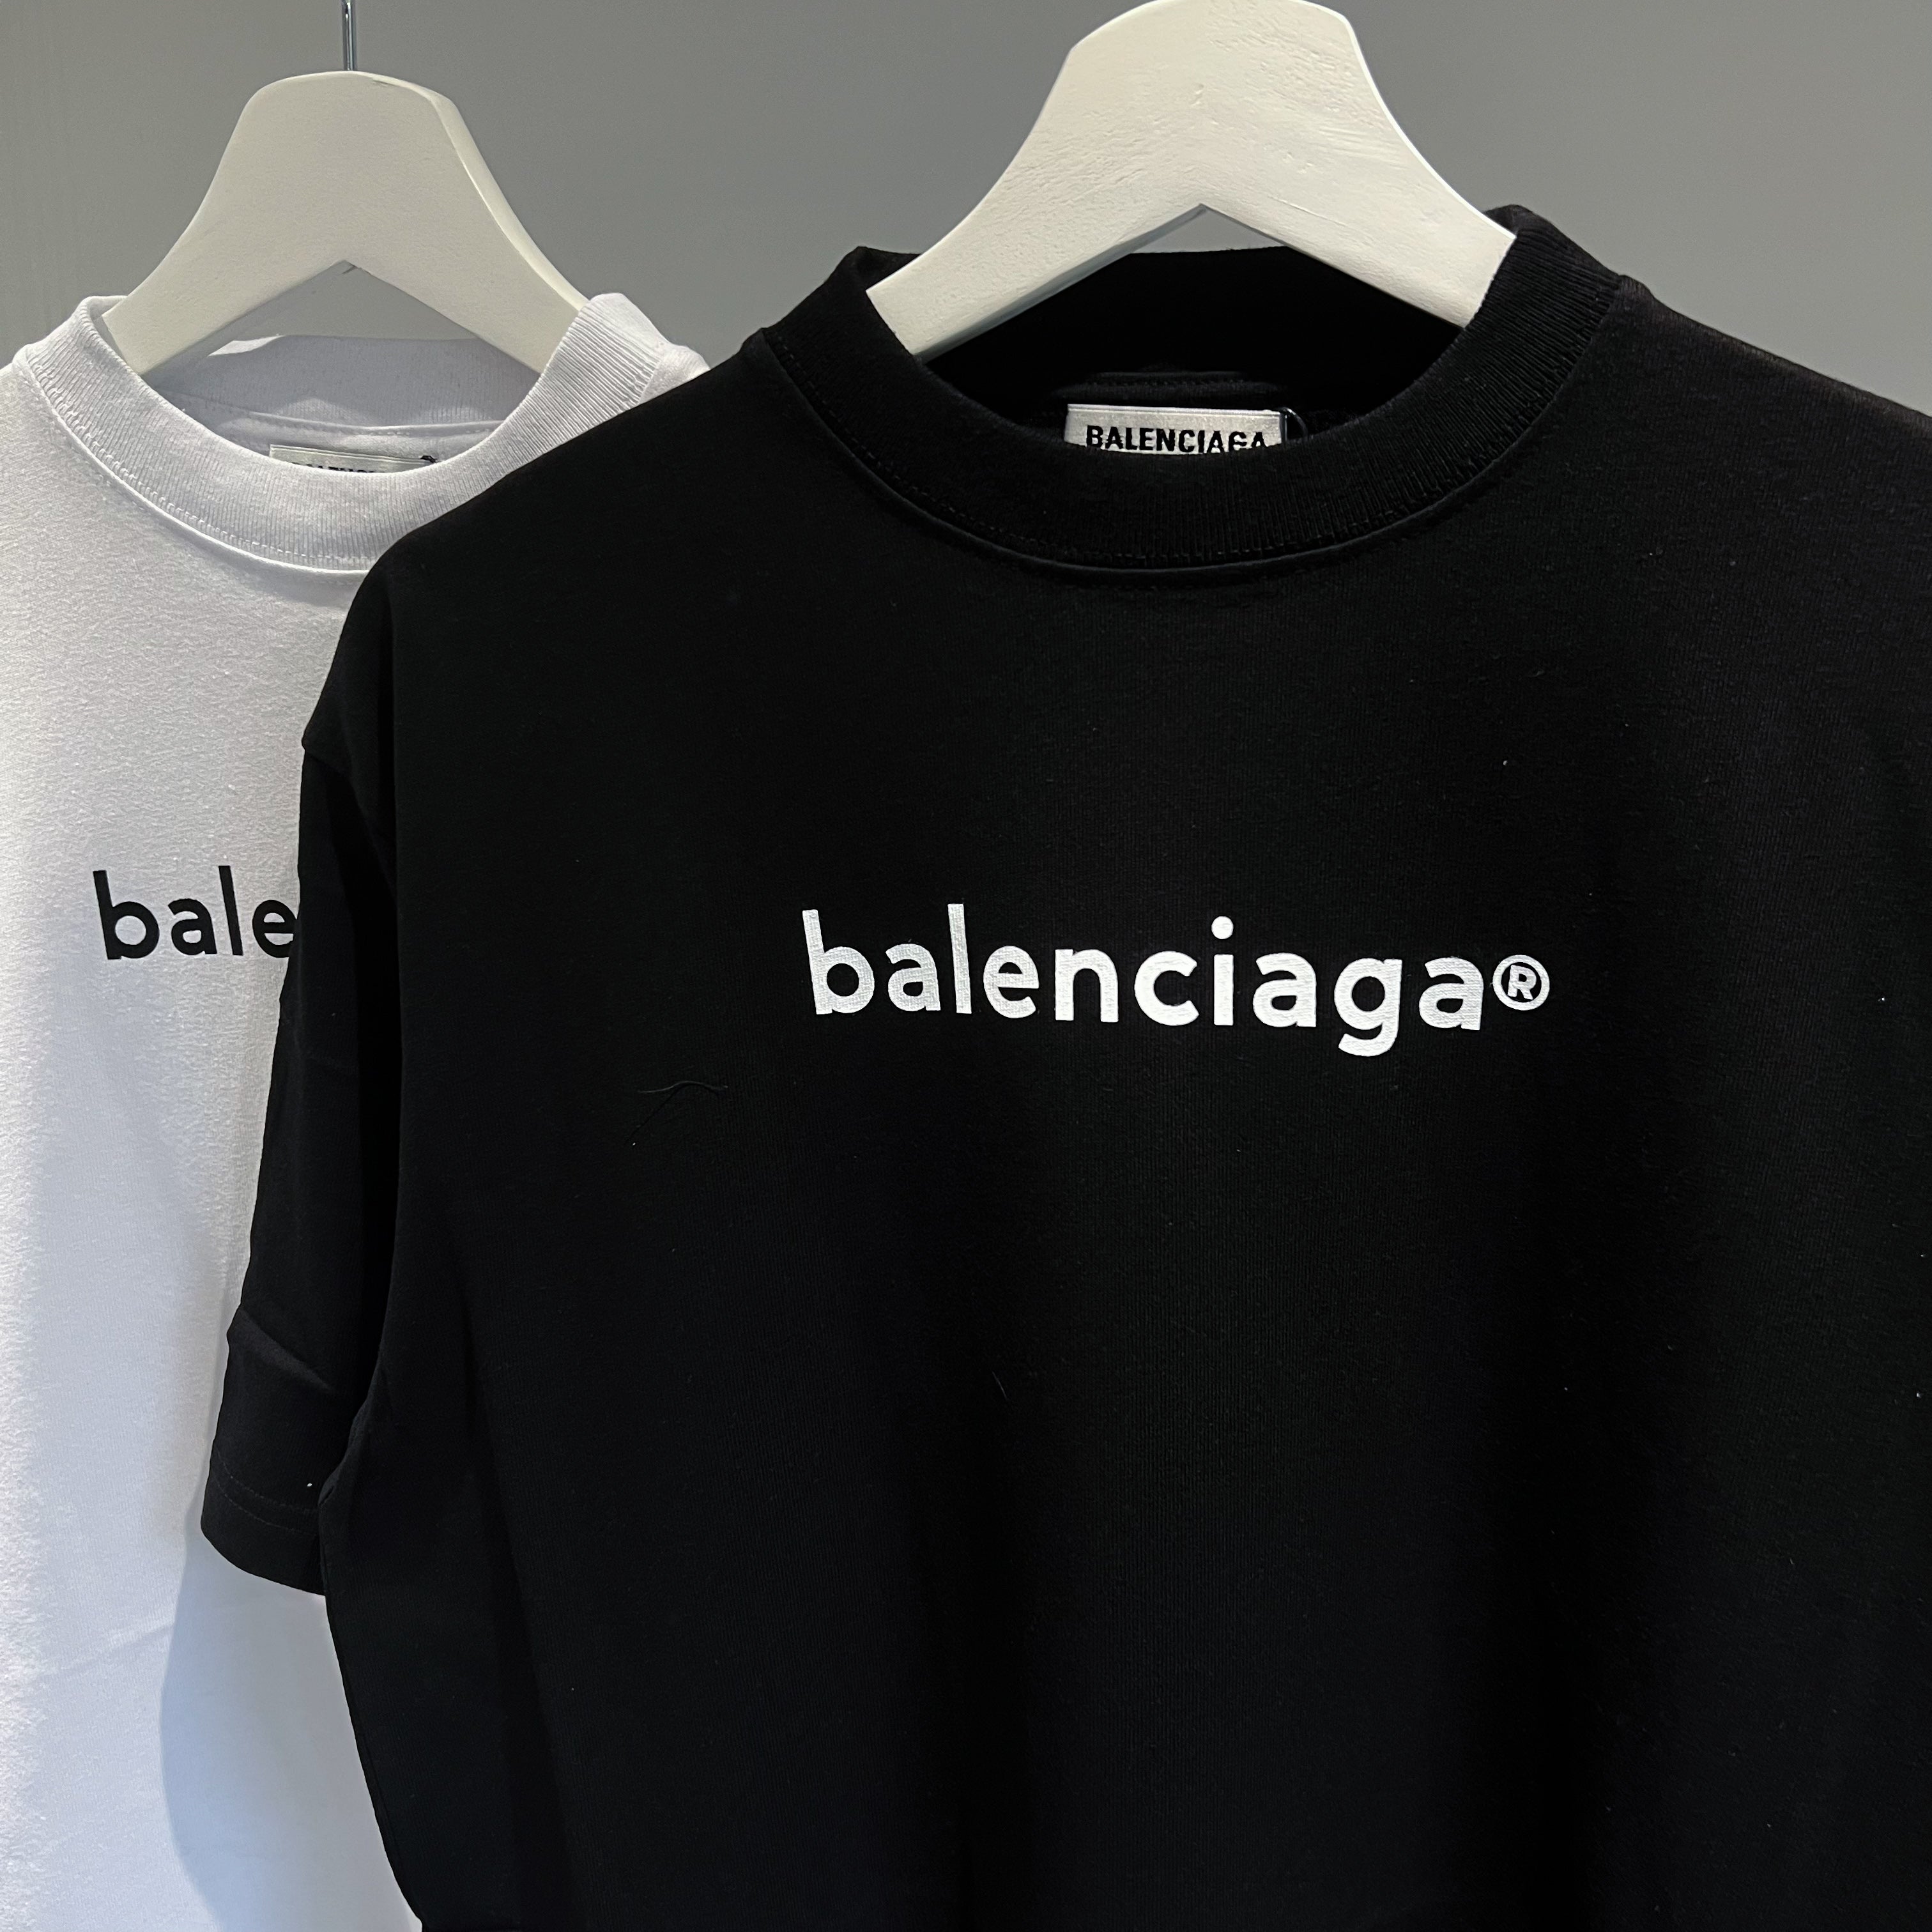 Balenciaga Copyright Tee - Black